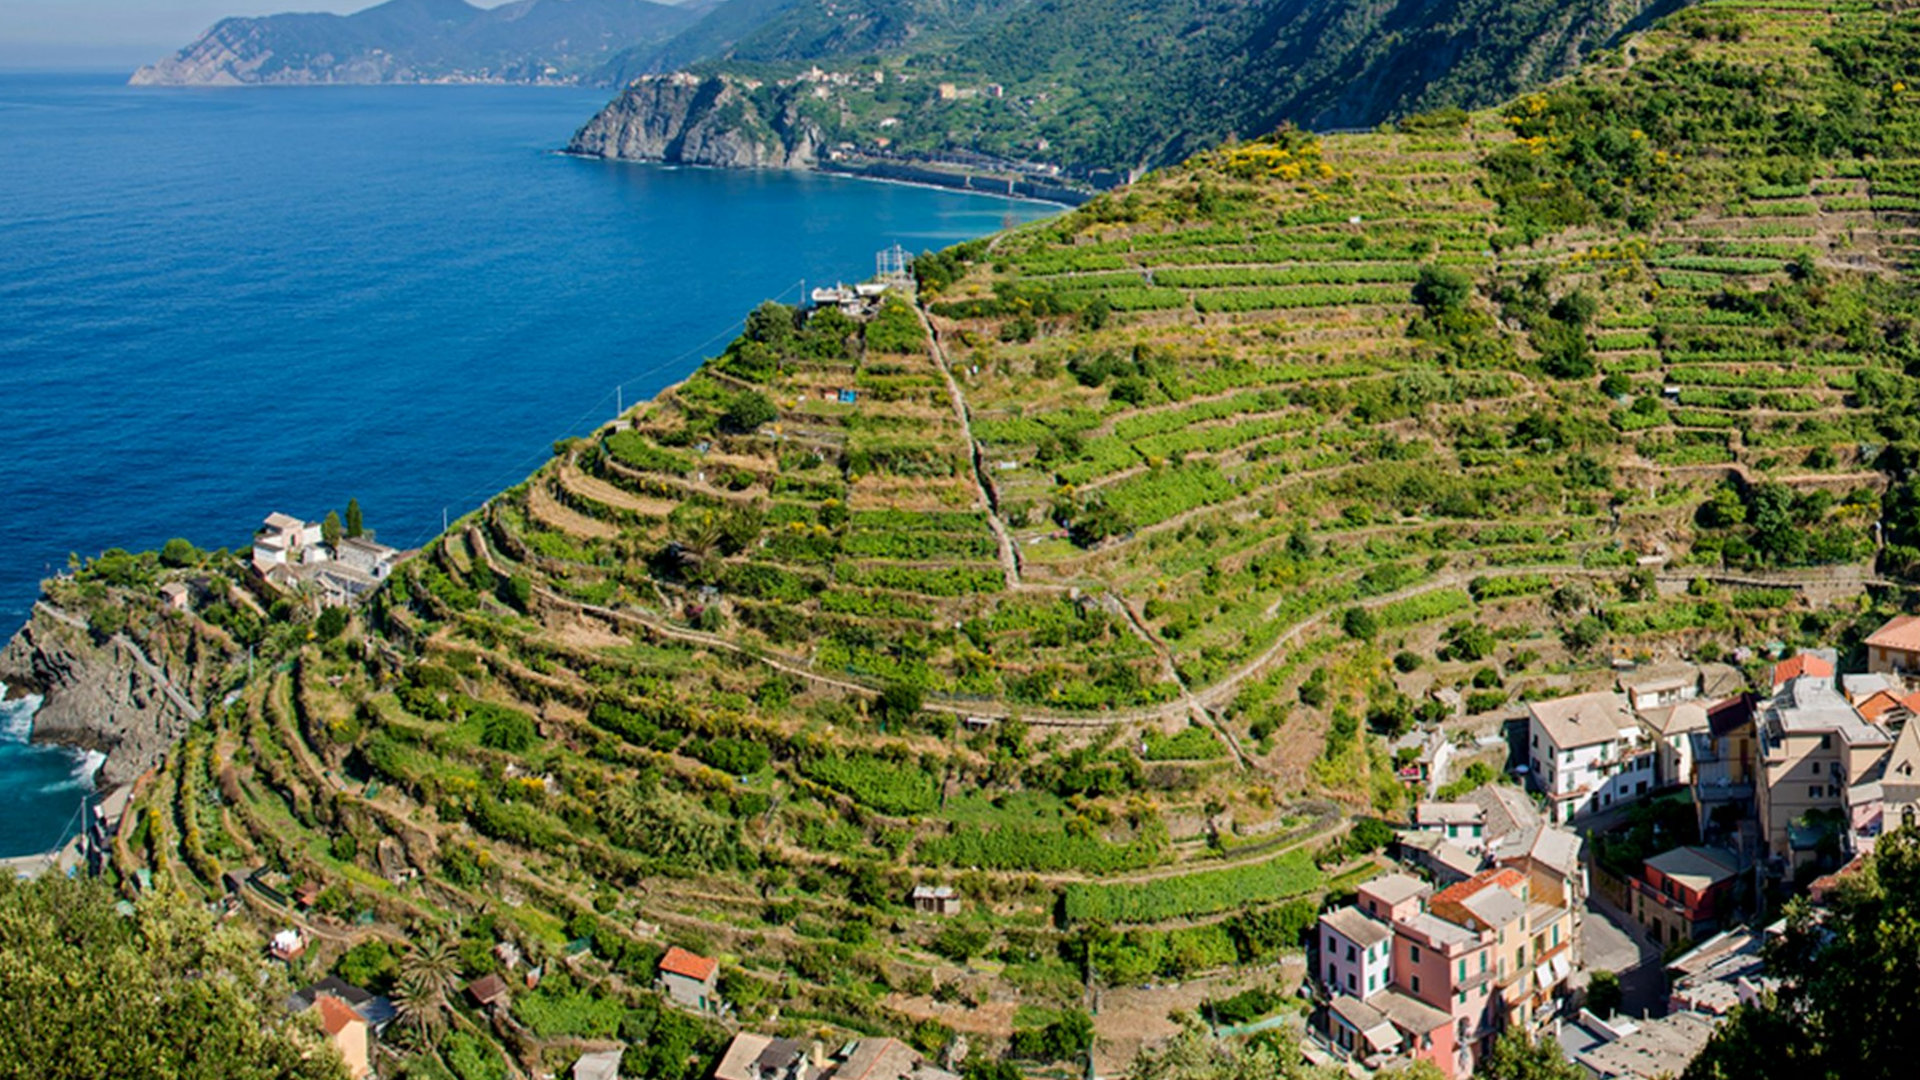 Estate calda tra i vitigni della Liguria, credits wineloversitaly